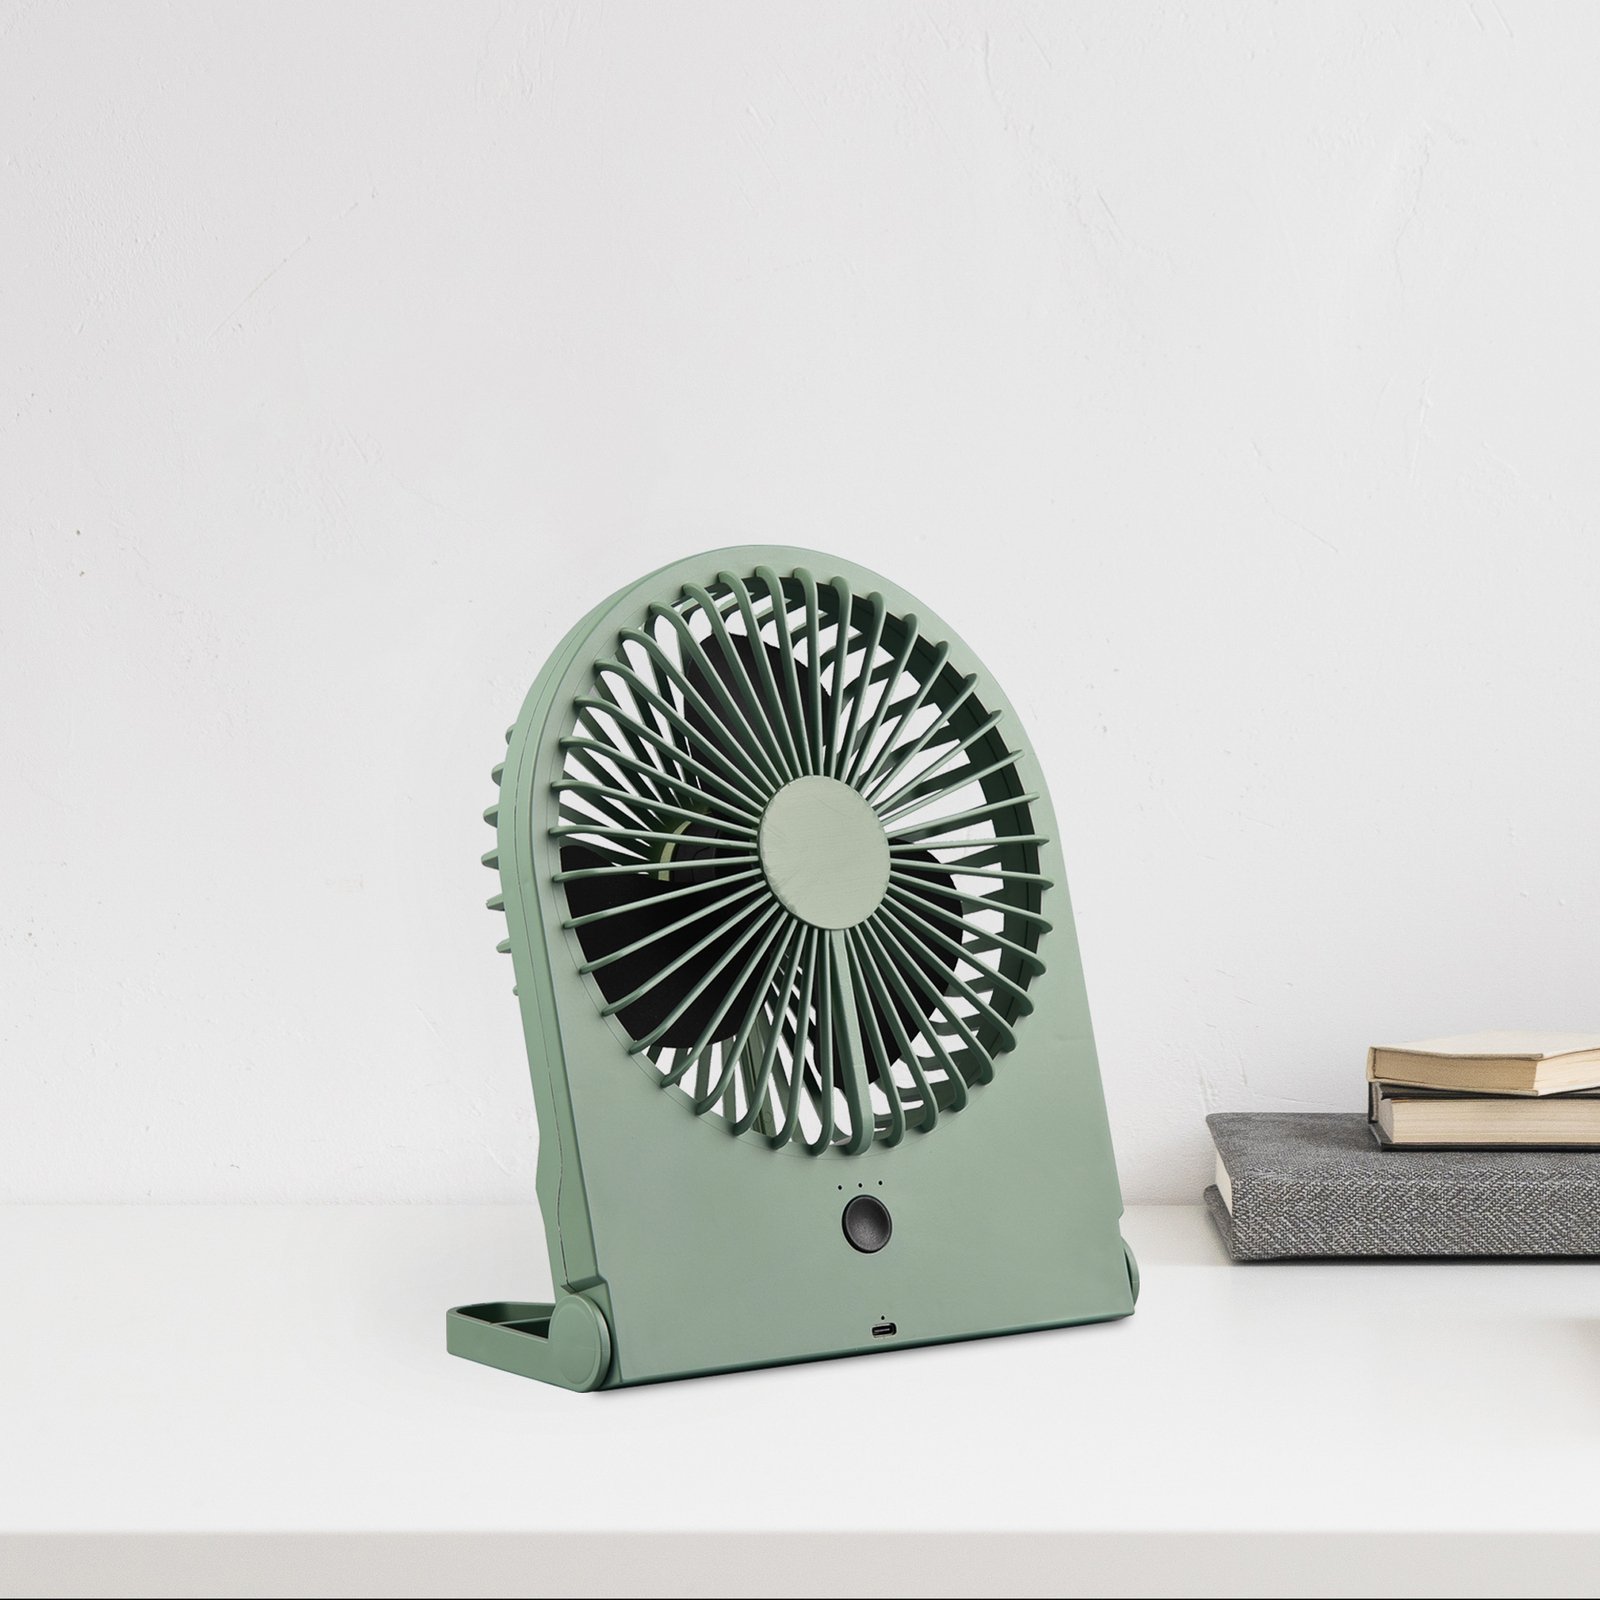 Breezy rechargeable table fan, pistachio green, quiet